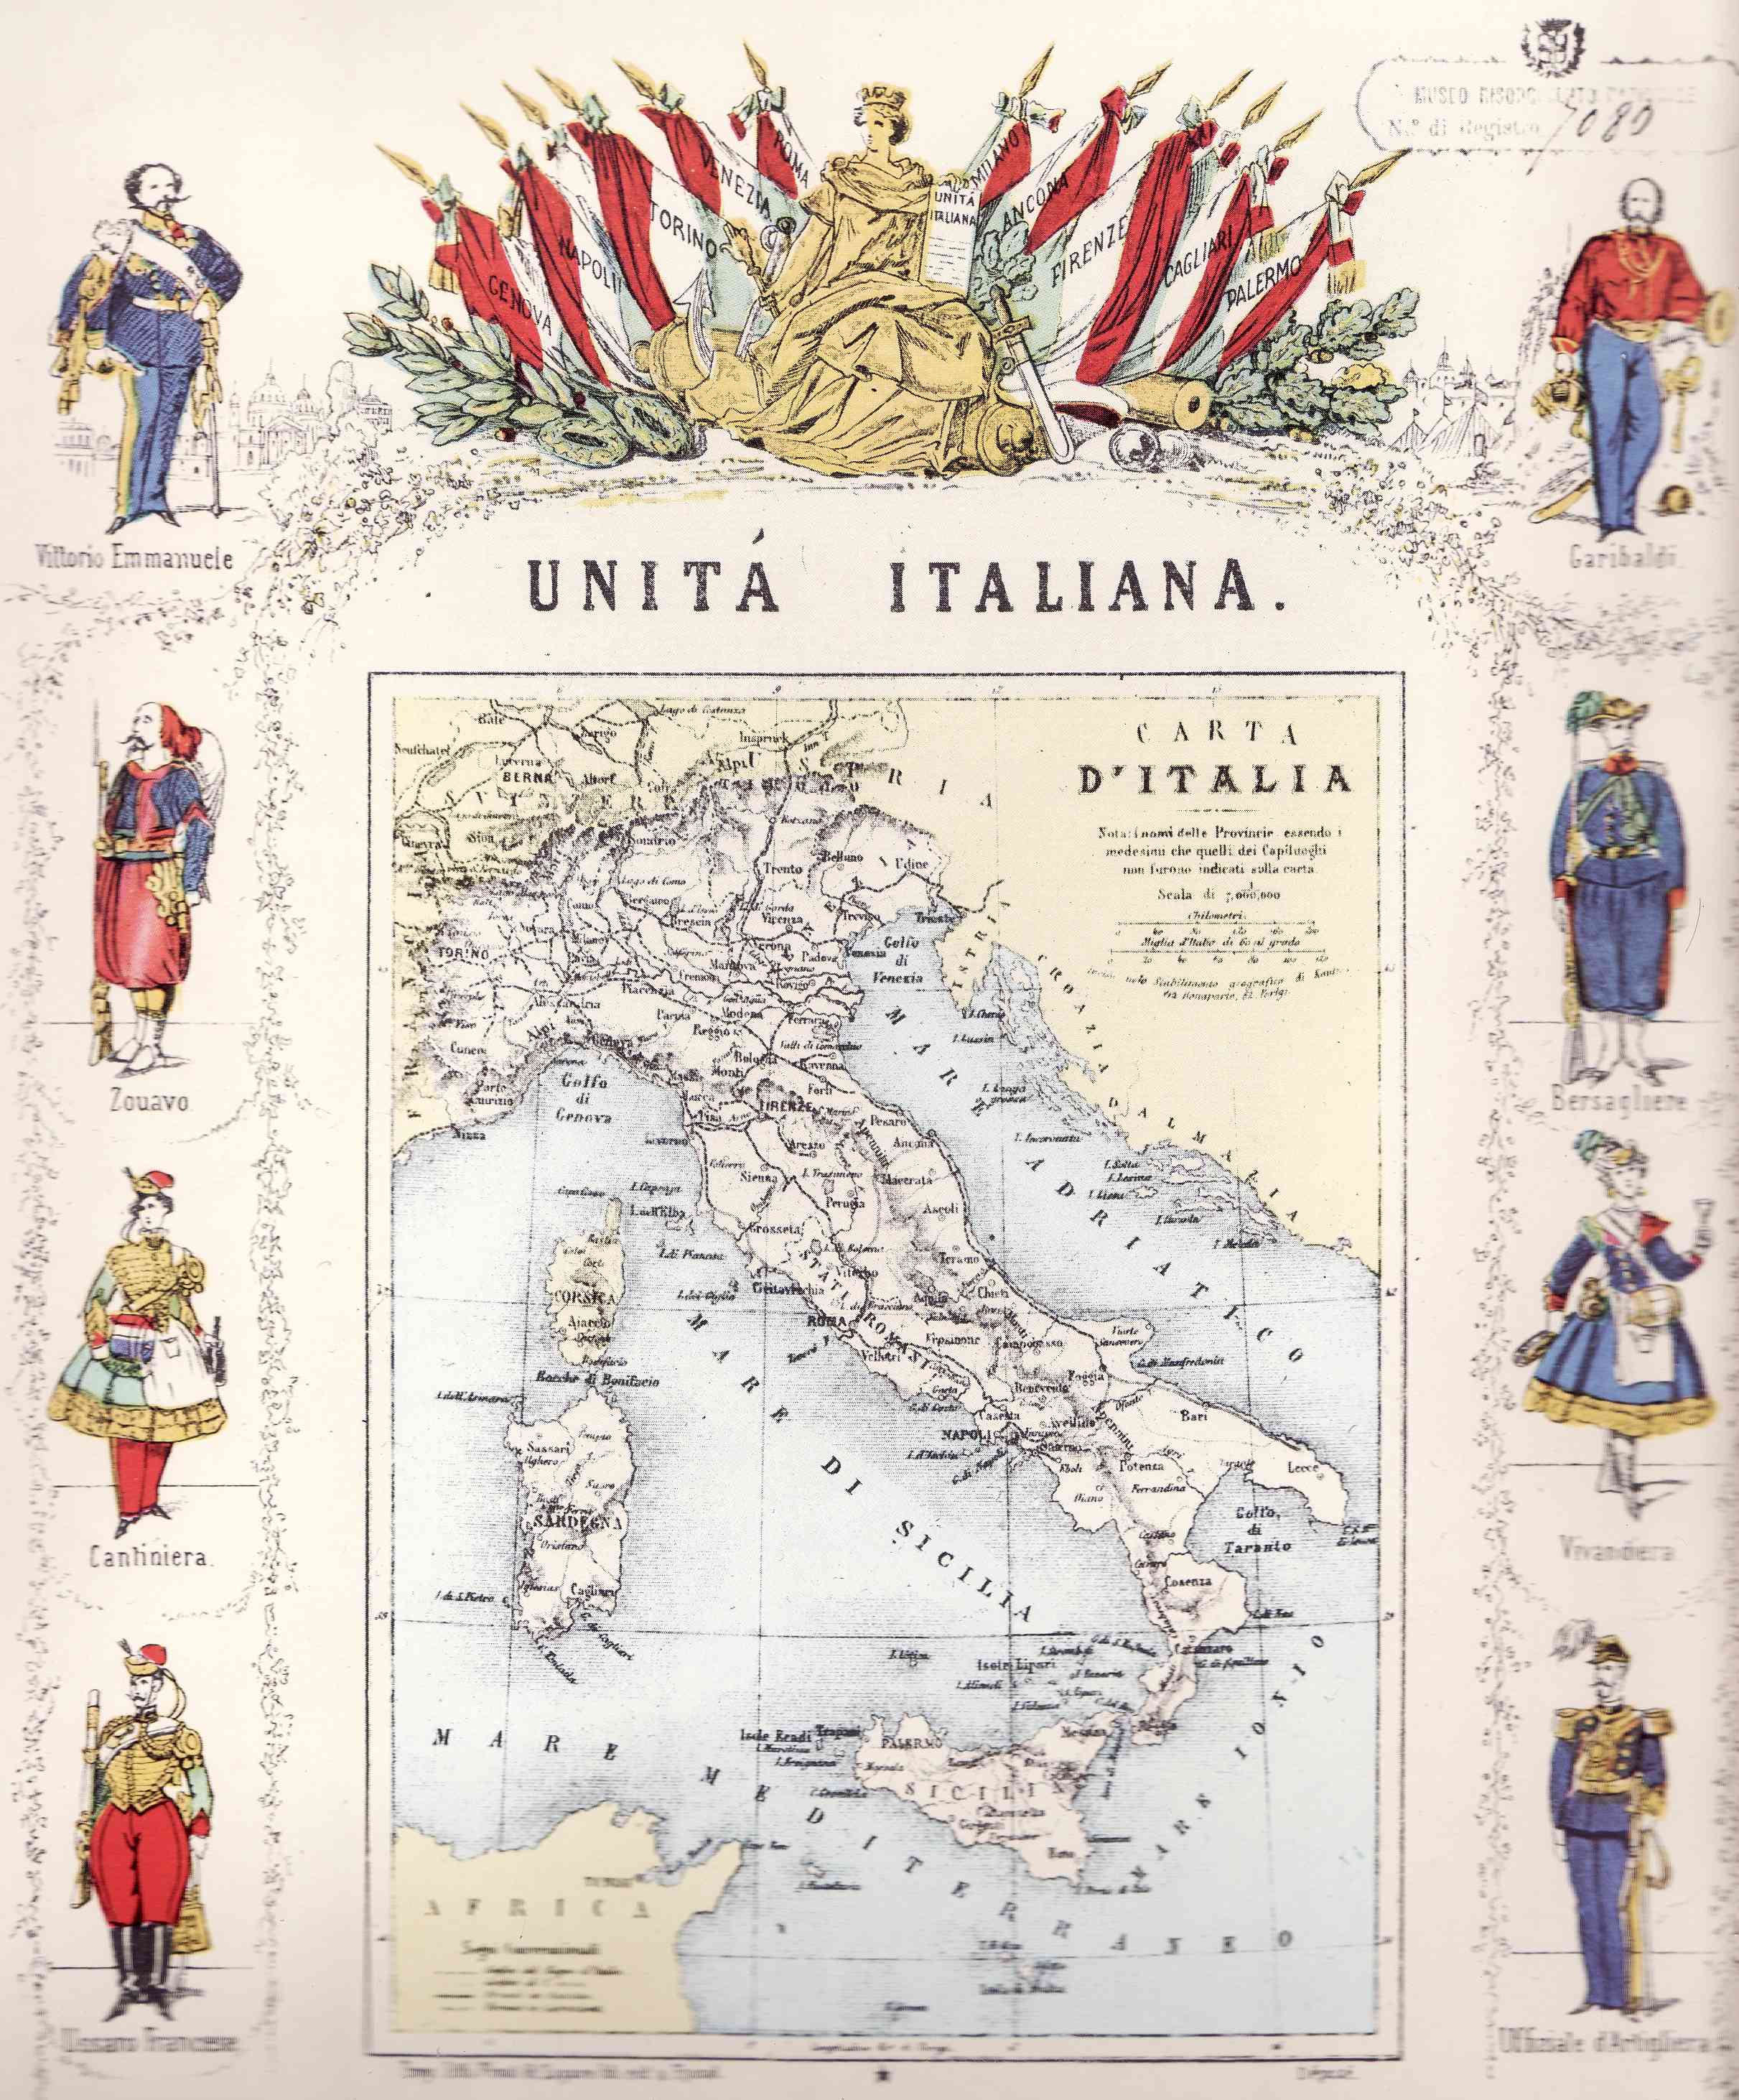 L'Italia unita in una carta commemorativa dell'epoca